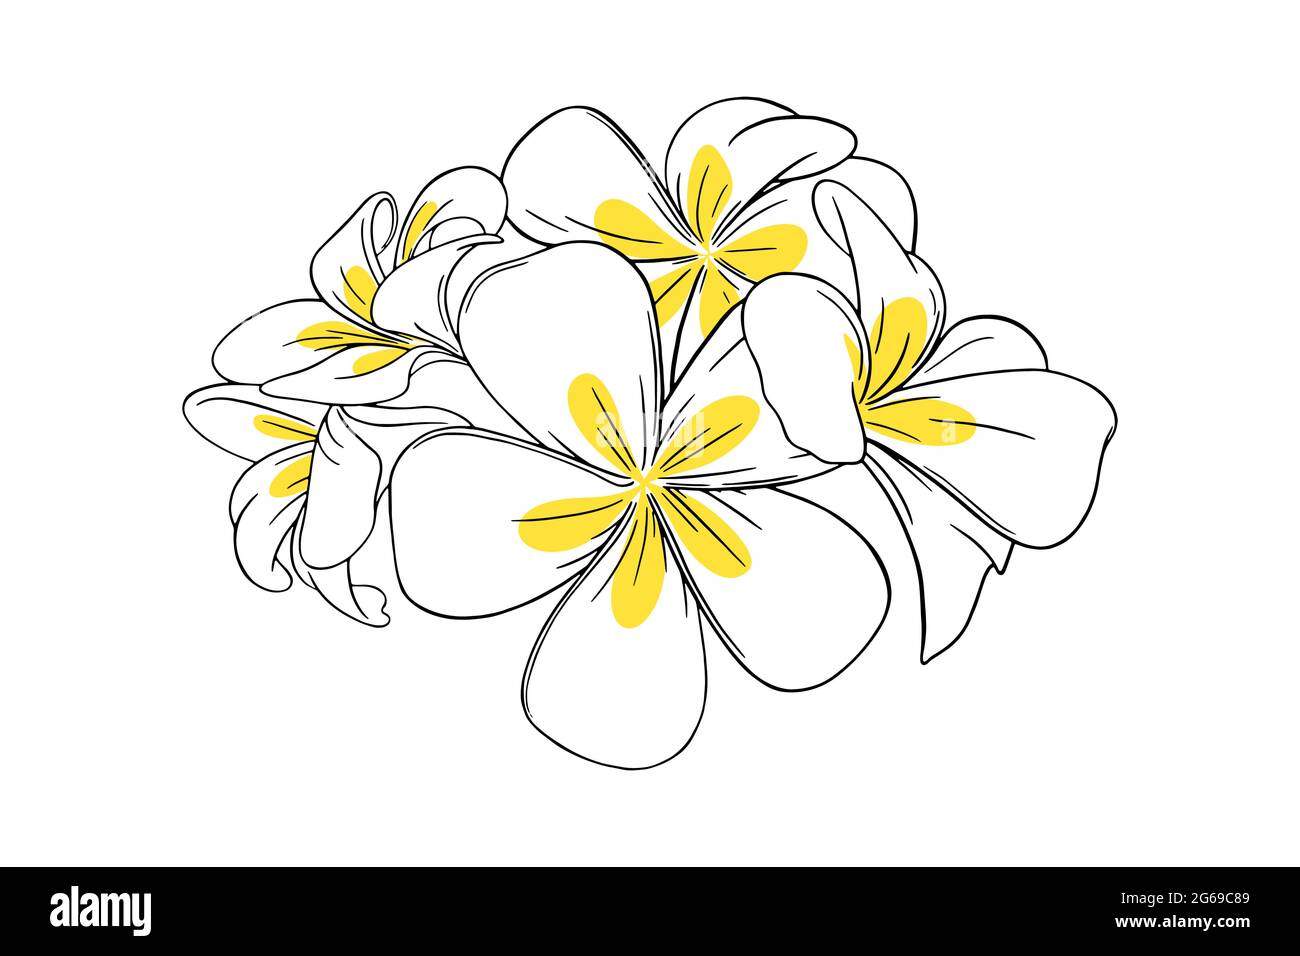 Frangipani o plumeria fiore tropicale per i leis. Frangipani con petali gialli isolati su sfondo bianco. Illustrazione vettoriale del contorno Illustrazione Vettoriale